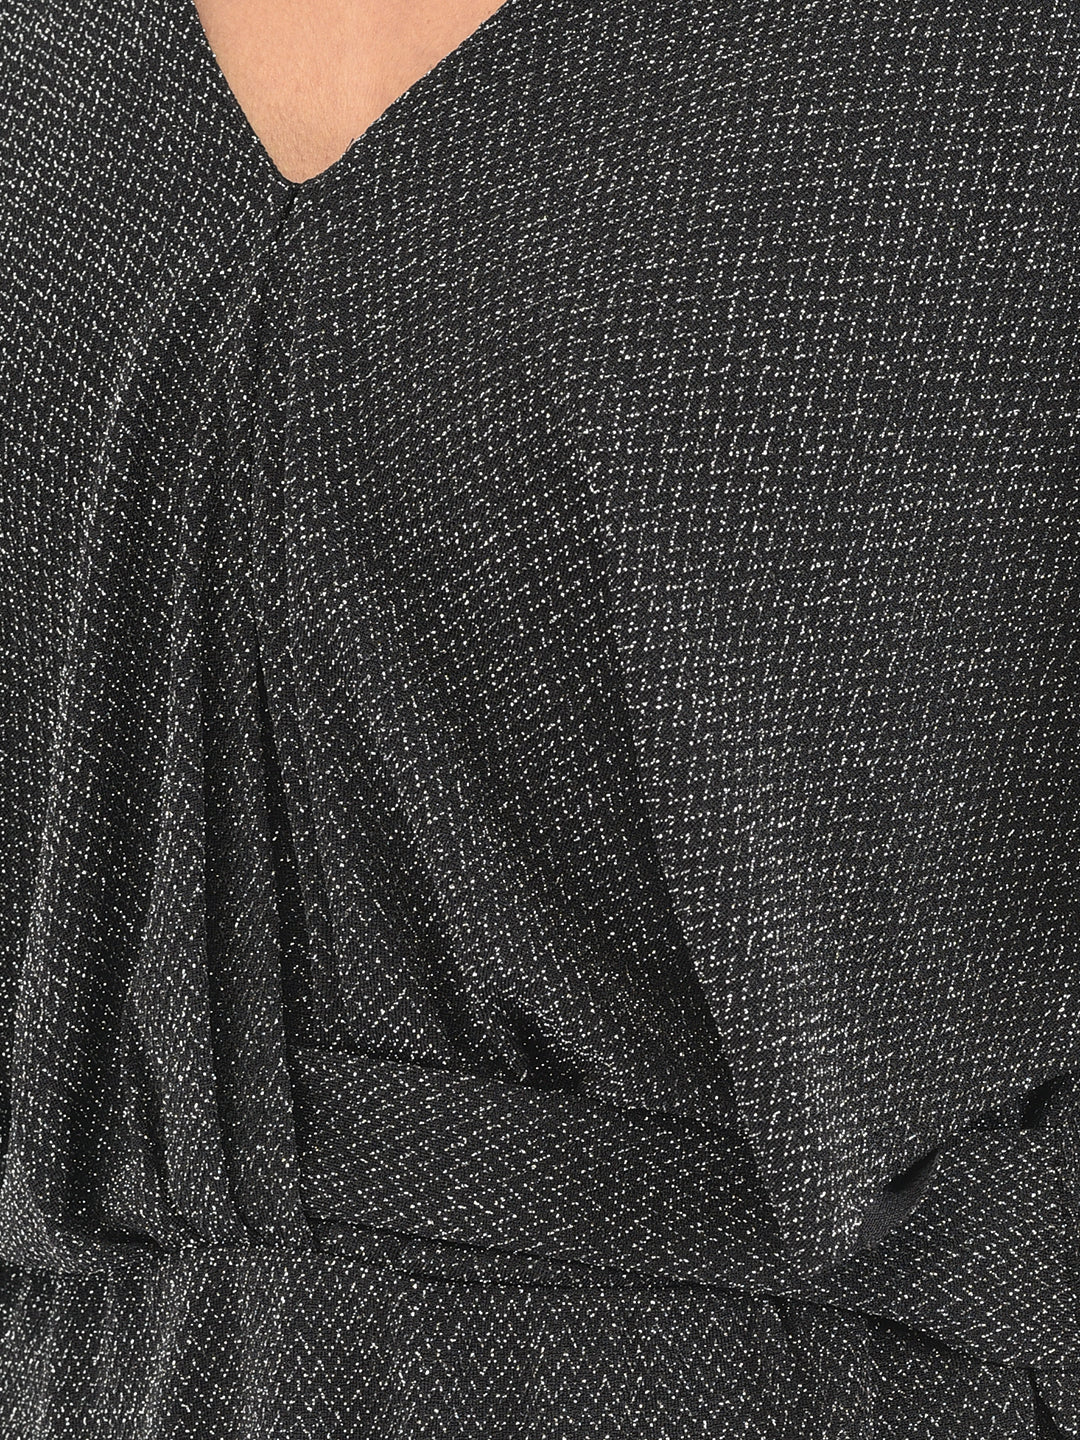 Black Half Sleeve Printed Top